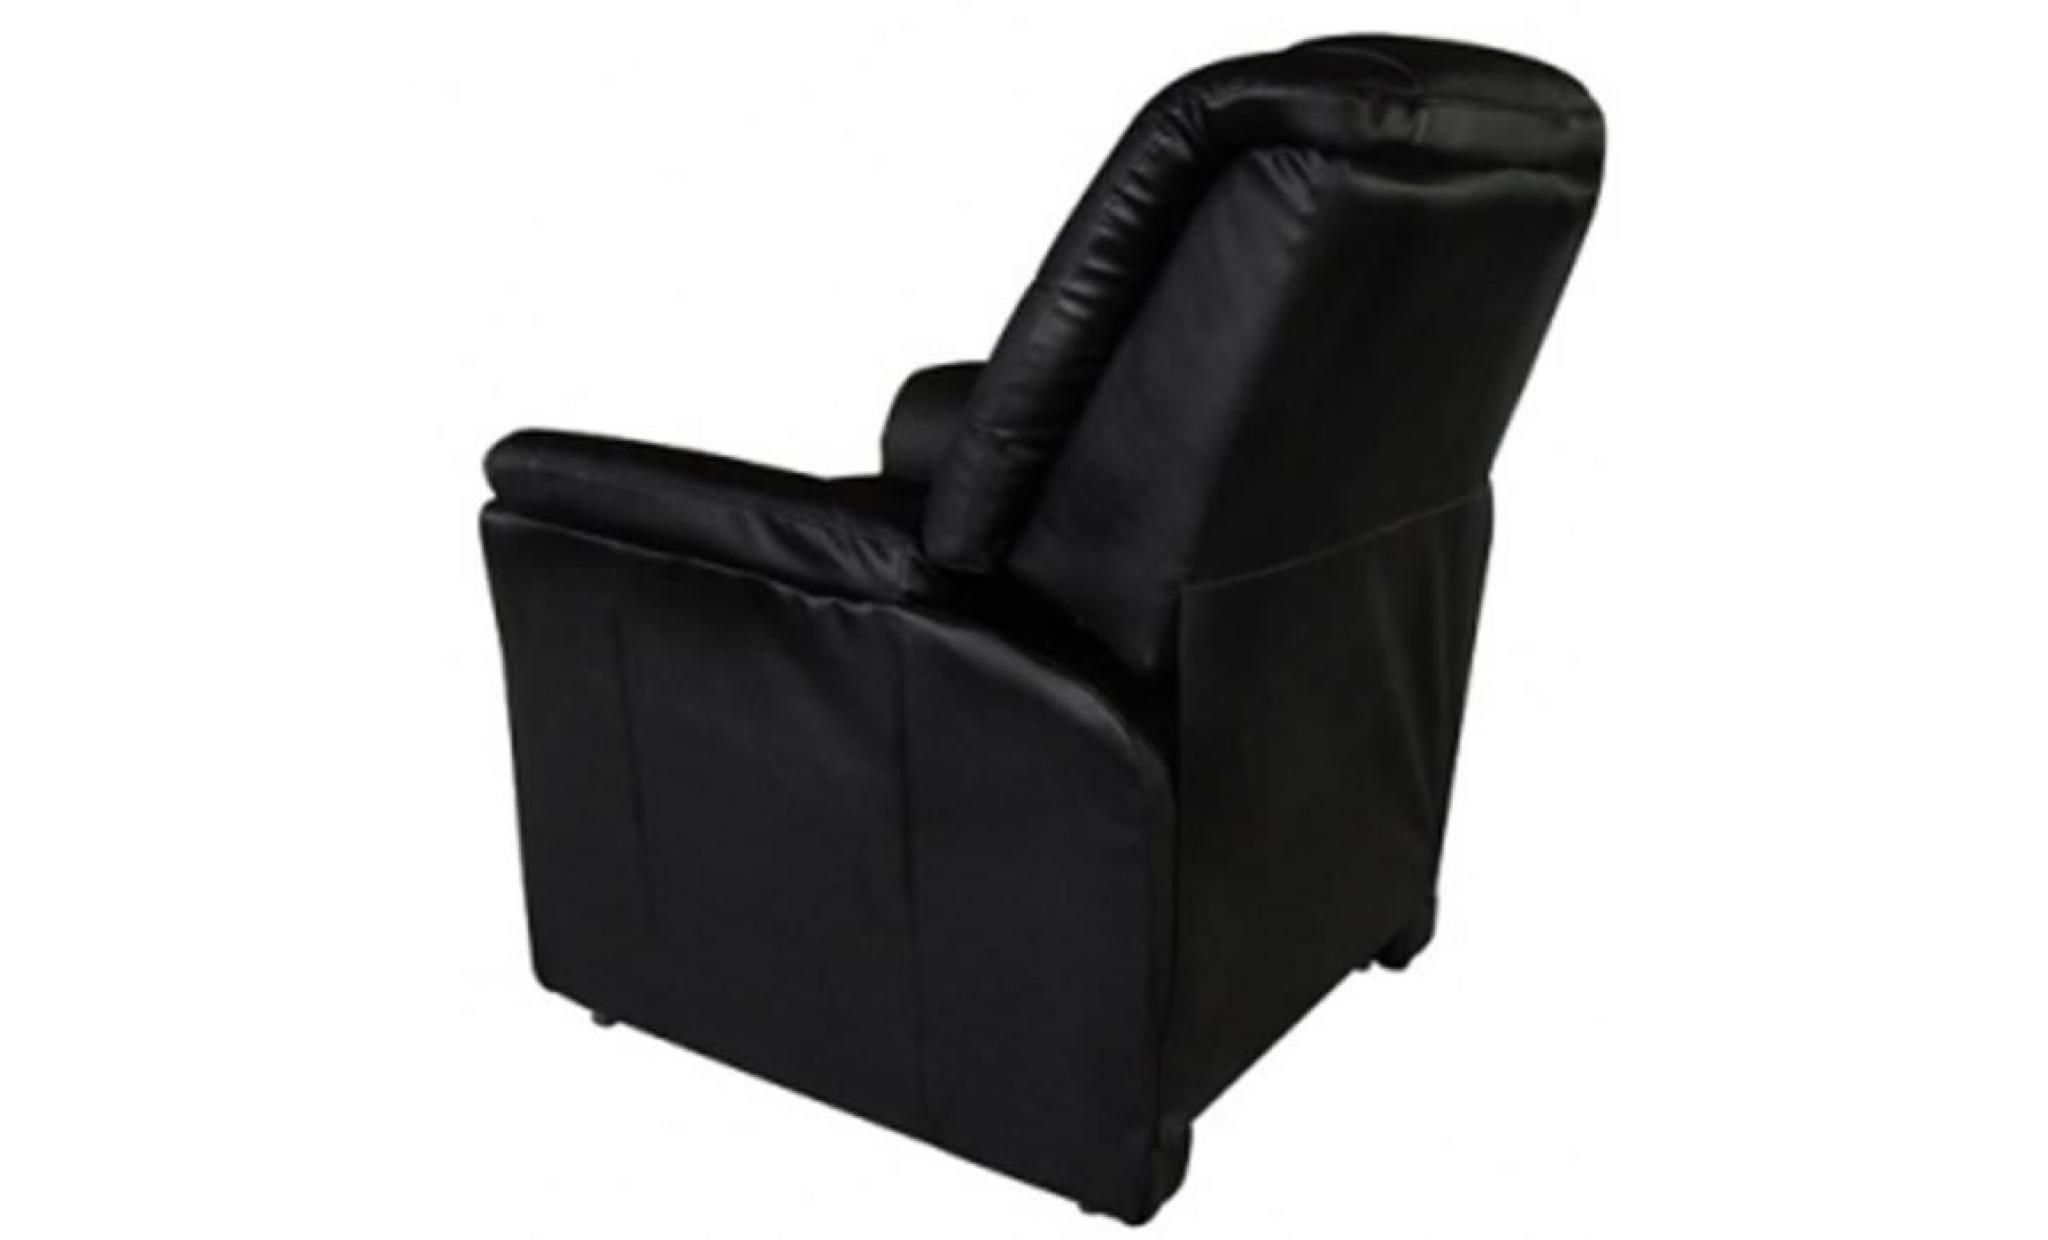 fauteuil de massage fauteuil de soins relaxant157 x 82 x 83 cm fauteuils électrique cuir artificiel noir pas cher